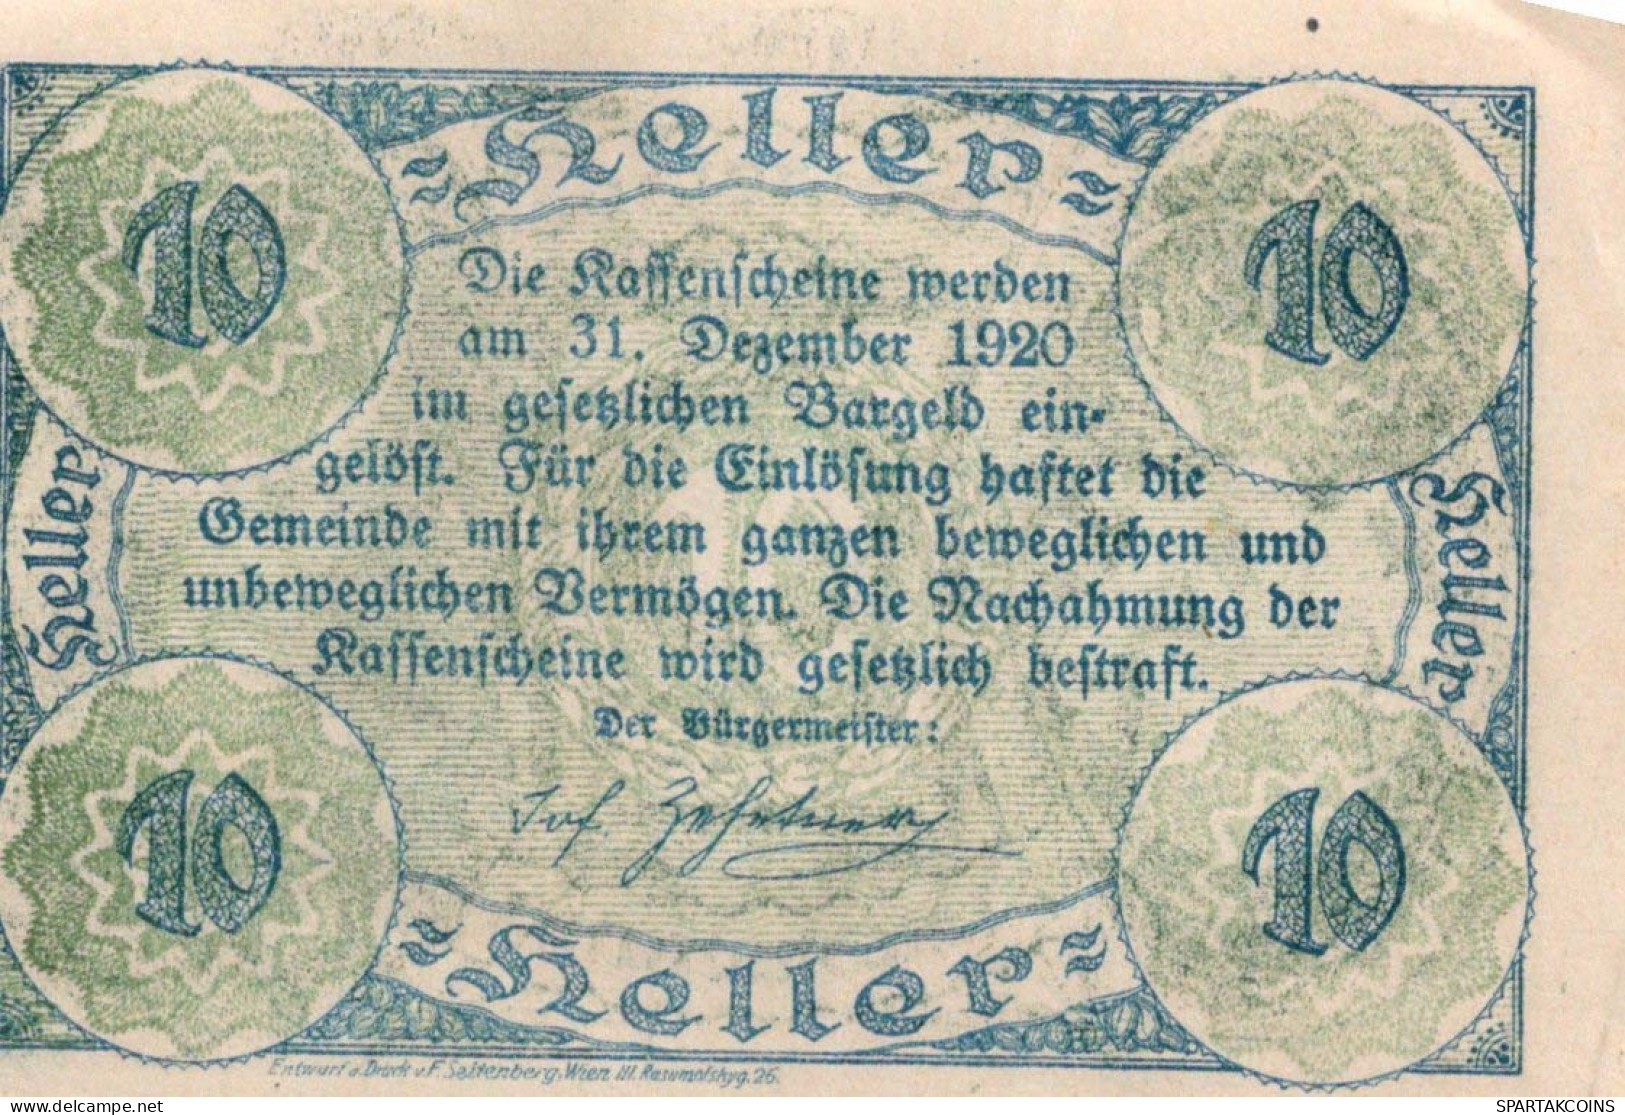 10 HELLER 1920 Stadt HAUSMENING Niedrigeren Österreich Notgeld Papiergeld Banknote #PG842 - [11] Emissioni Locali